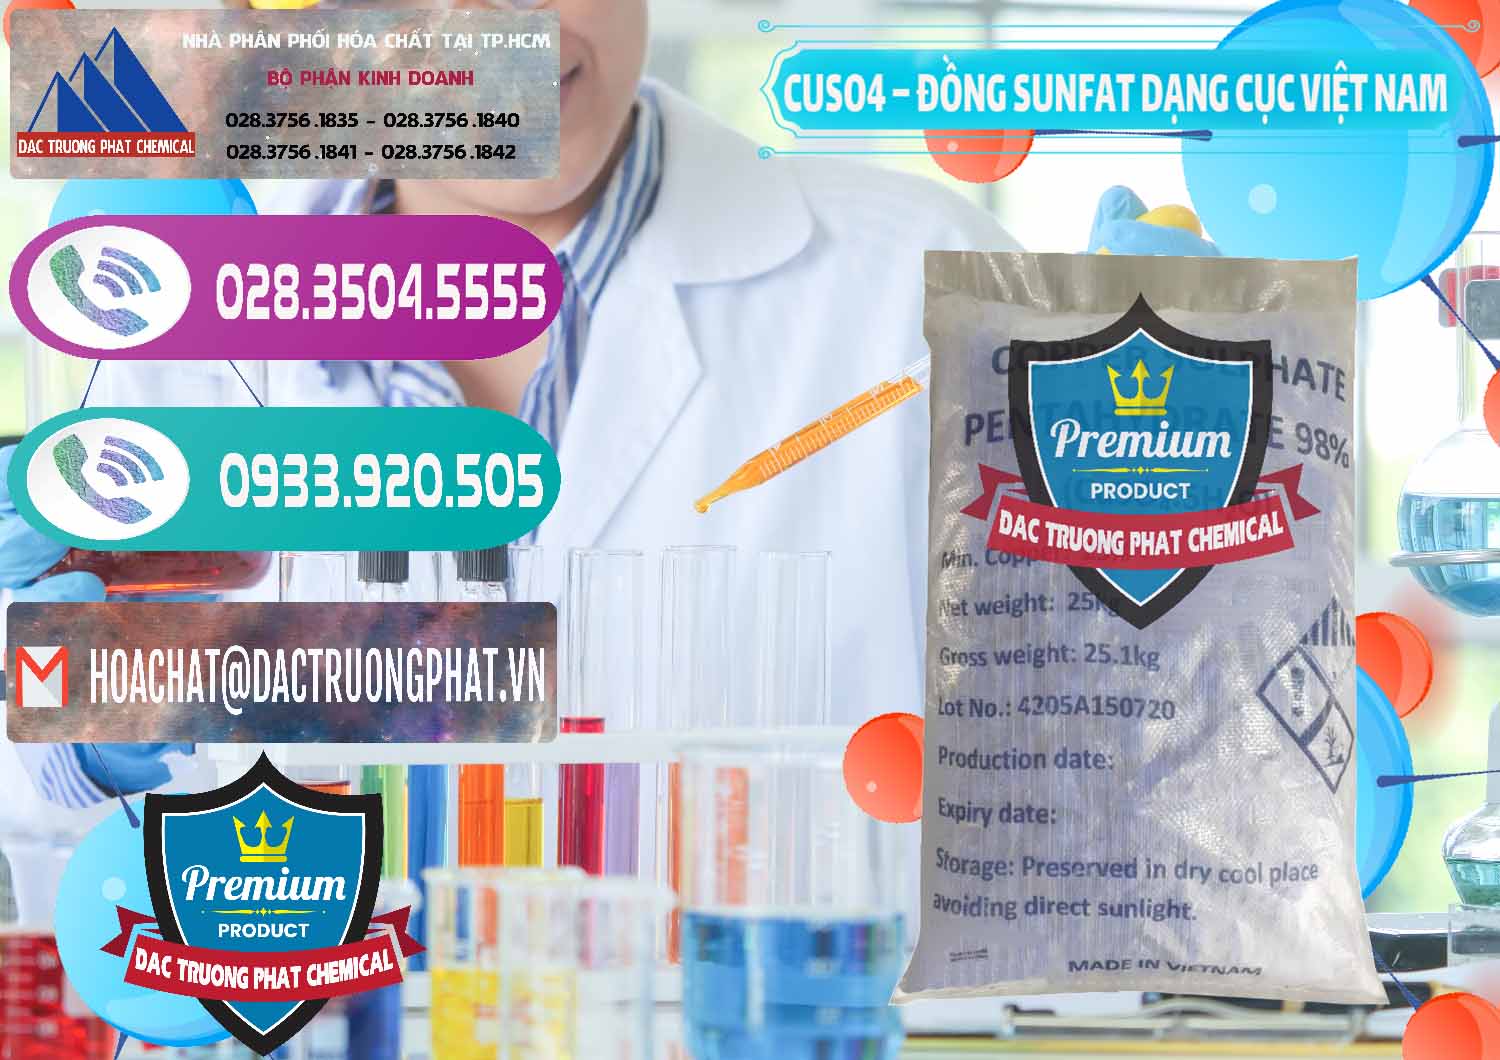 Nơi bán và phân phối CUSO4 – Đồng Sunfat Dạng Cục Việt Nam - 0303 - Nơi cung cấp và kinh doanh hóa chất tại TP.HCM - hoachatxulynuoc.com